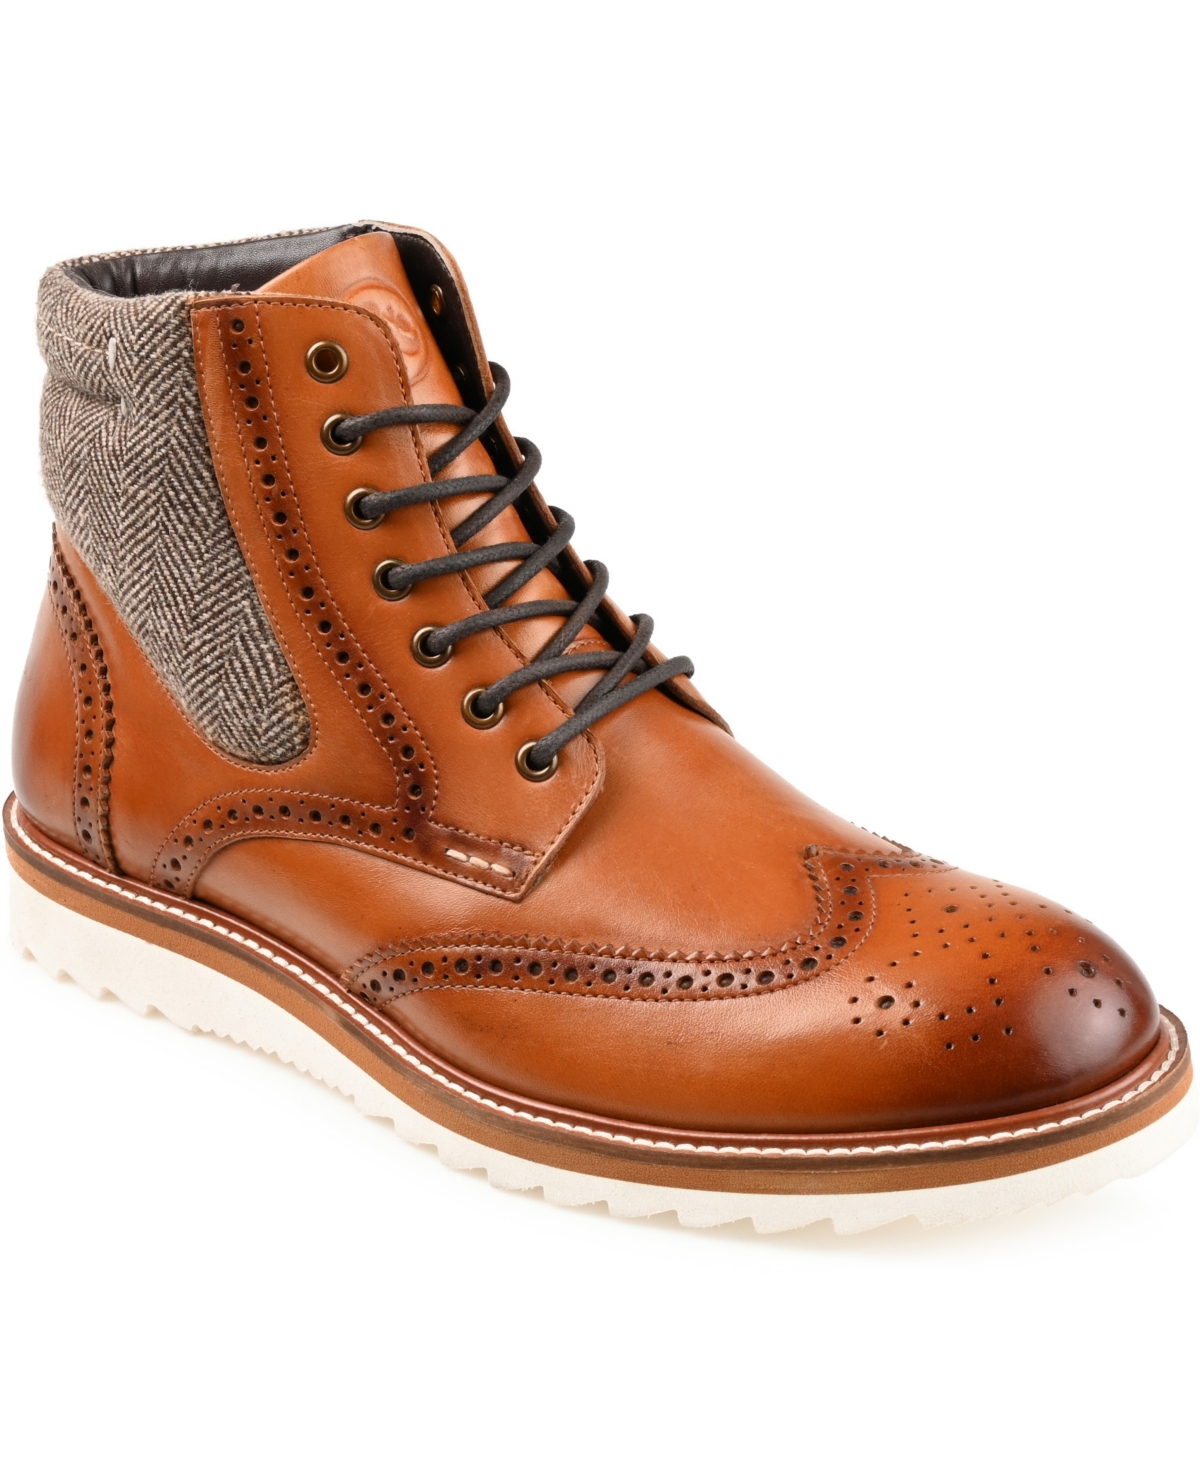 Men's Rockland Wingtip Ankle Boot - Cognac